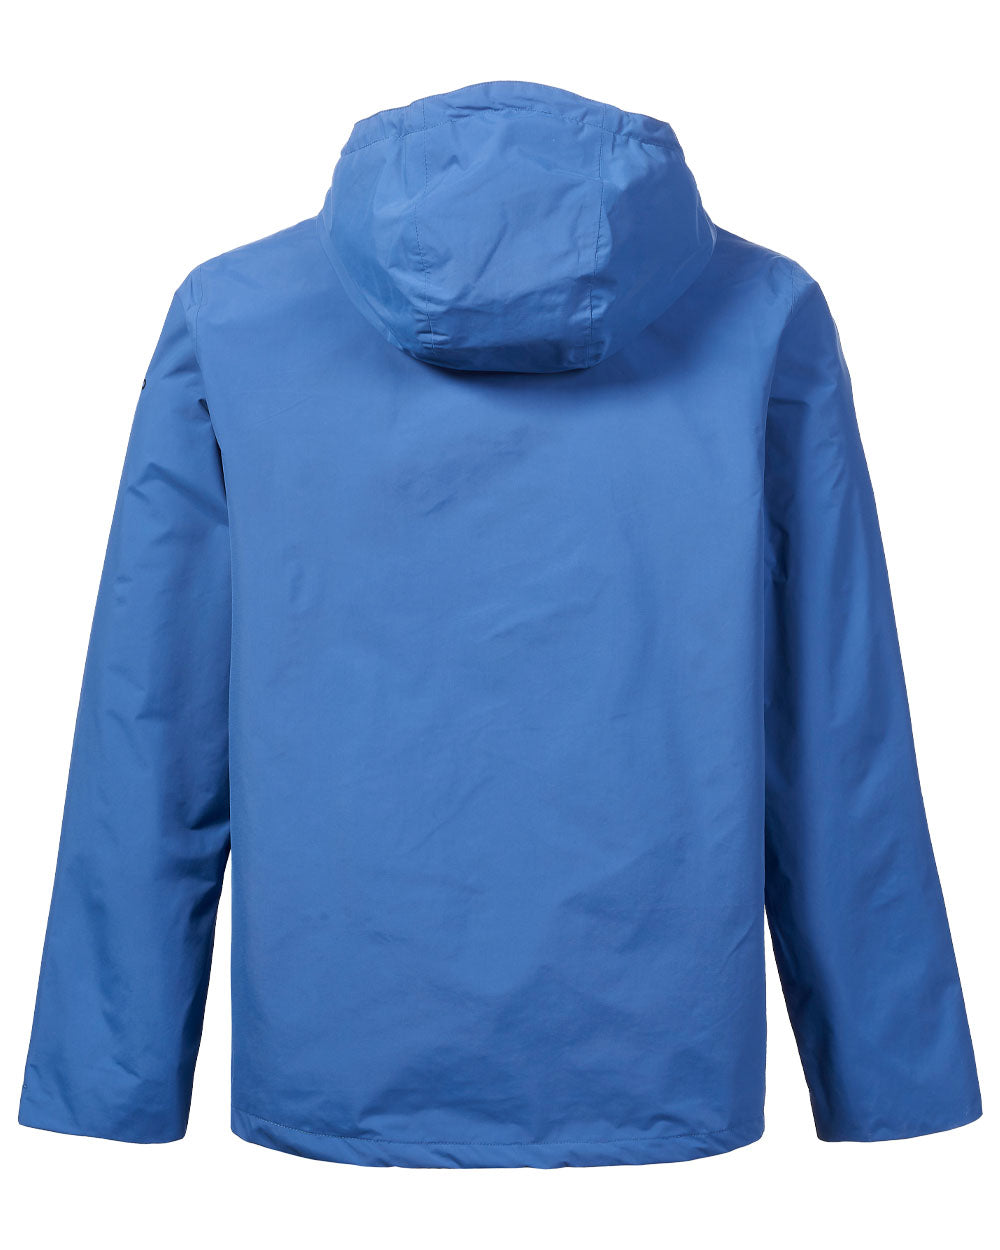 Marine Blue coloured Musto Marina Rain Jacket on White background 